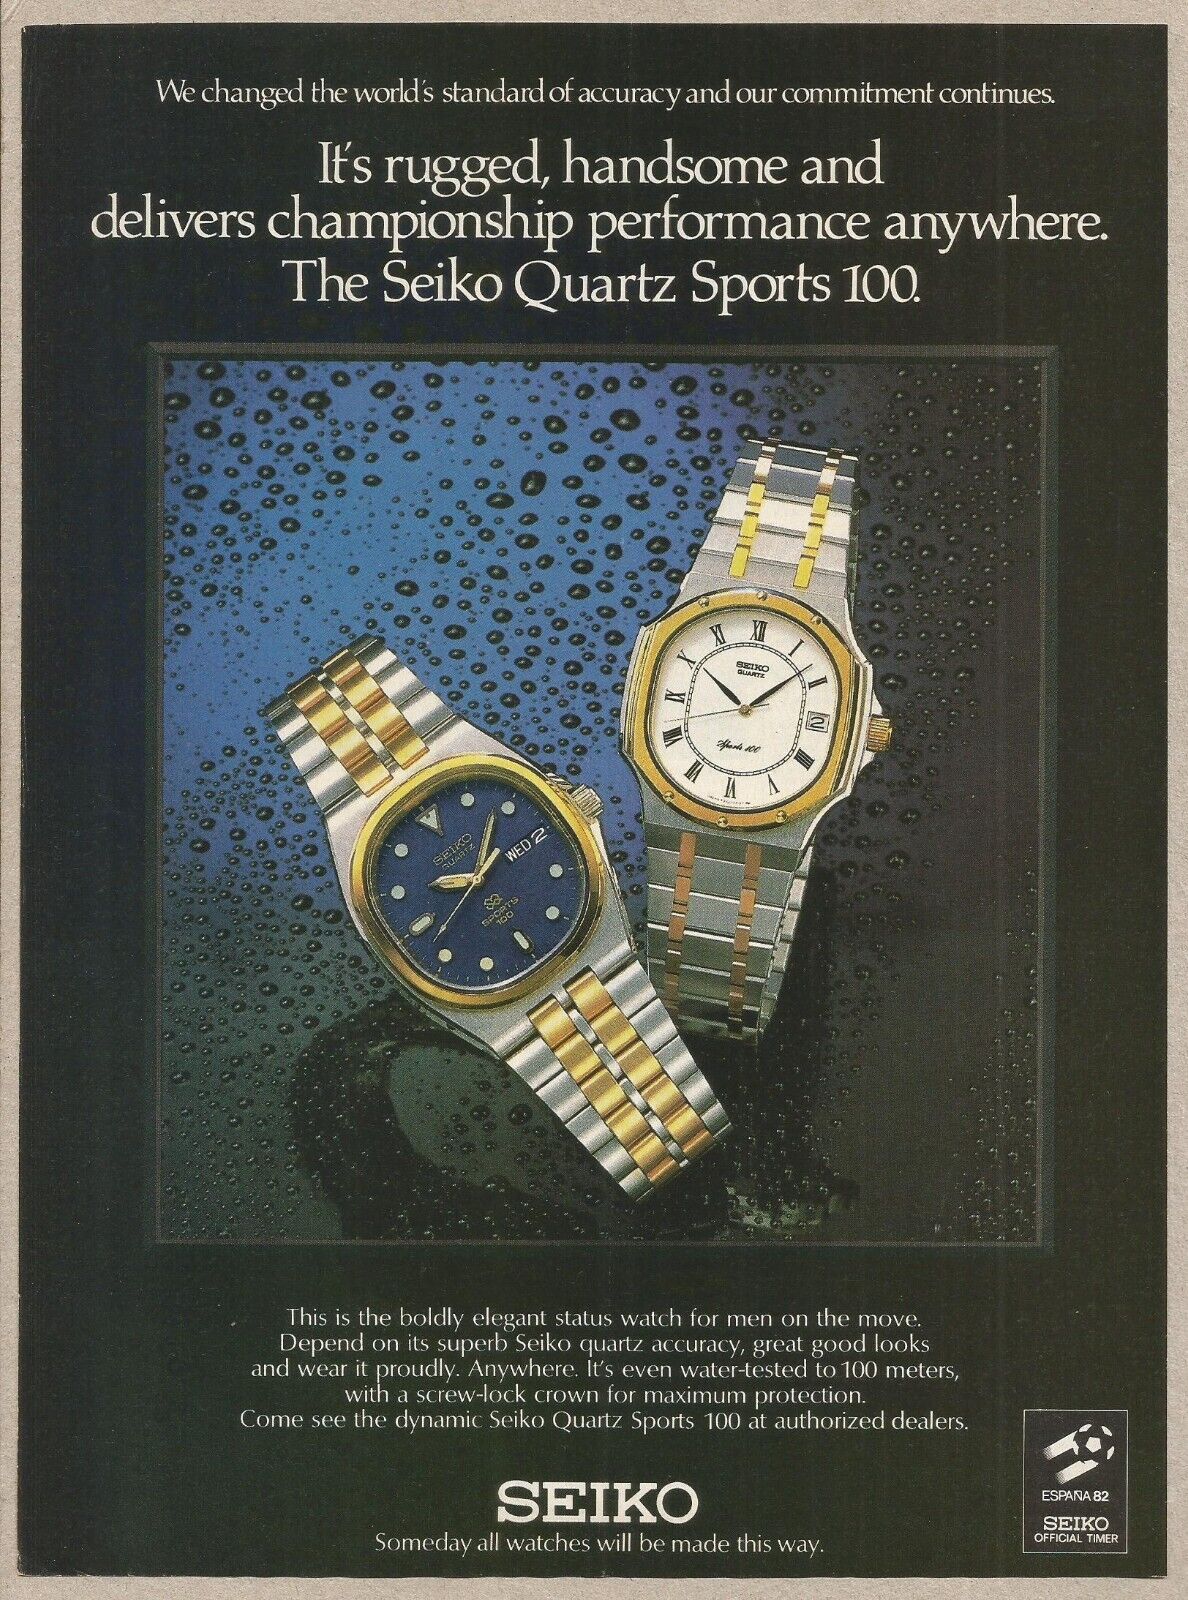 The Seiko Quartz Sports 100 - 1981 Vintage Print Advertisement